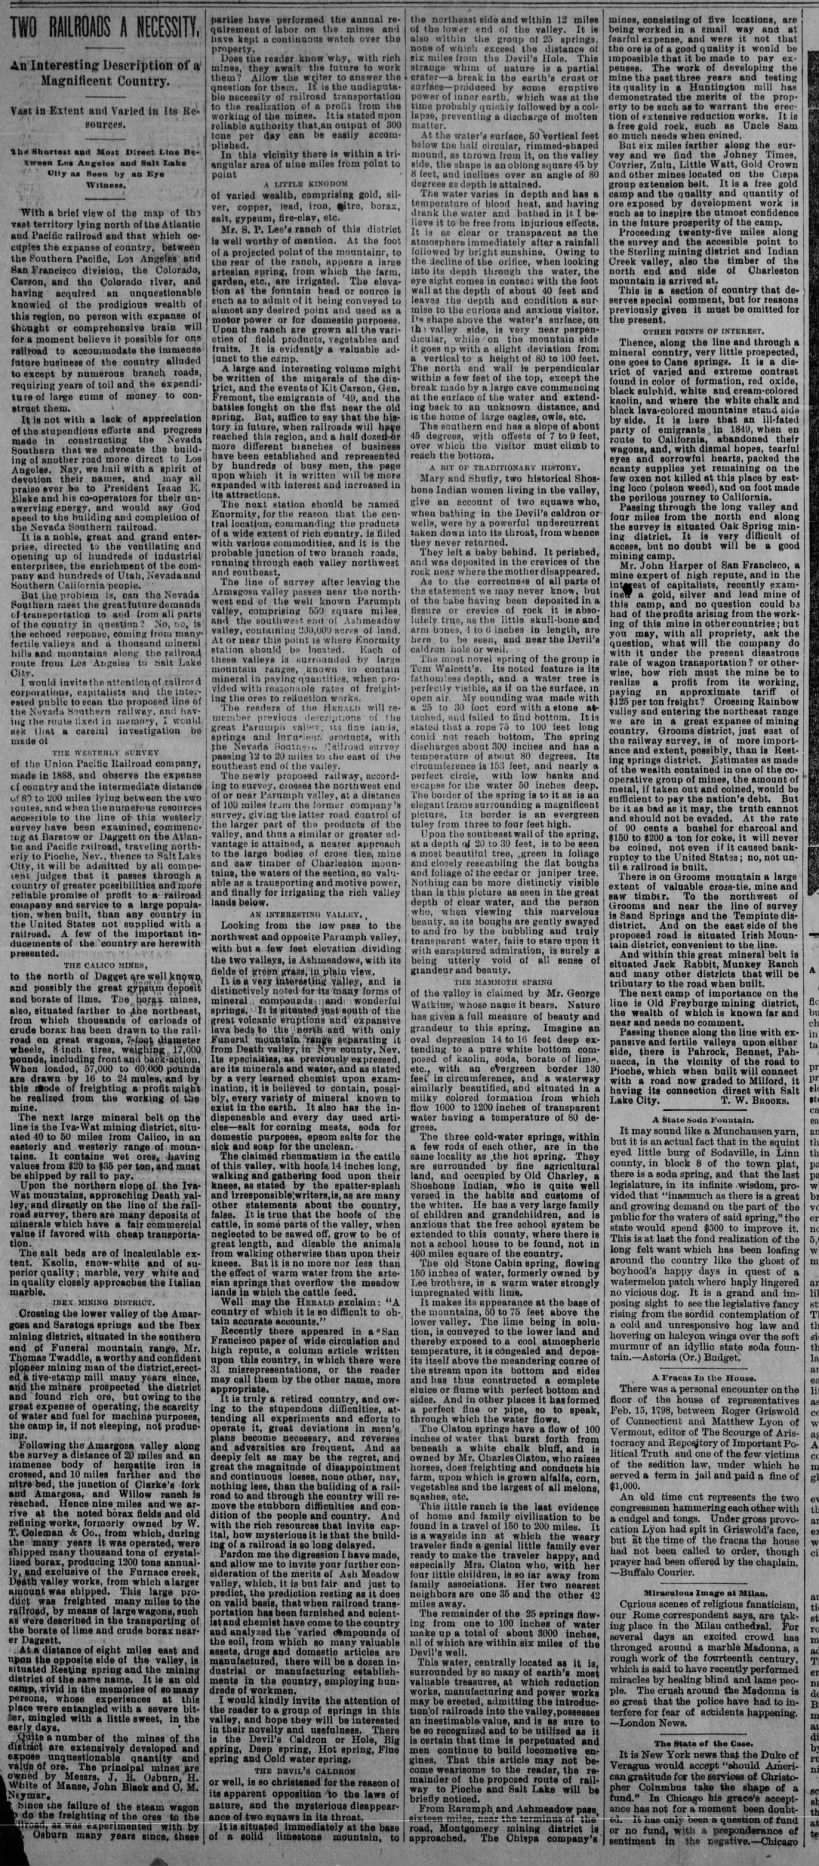 LAH 9.17.1893